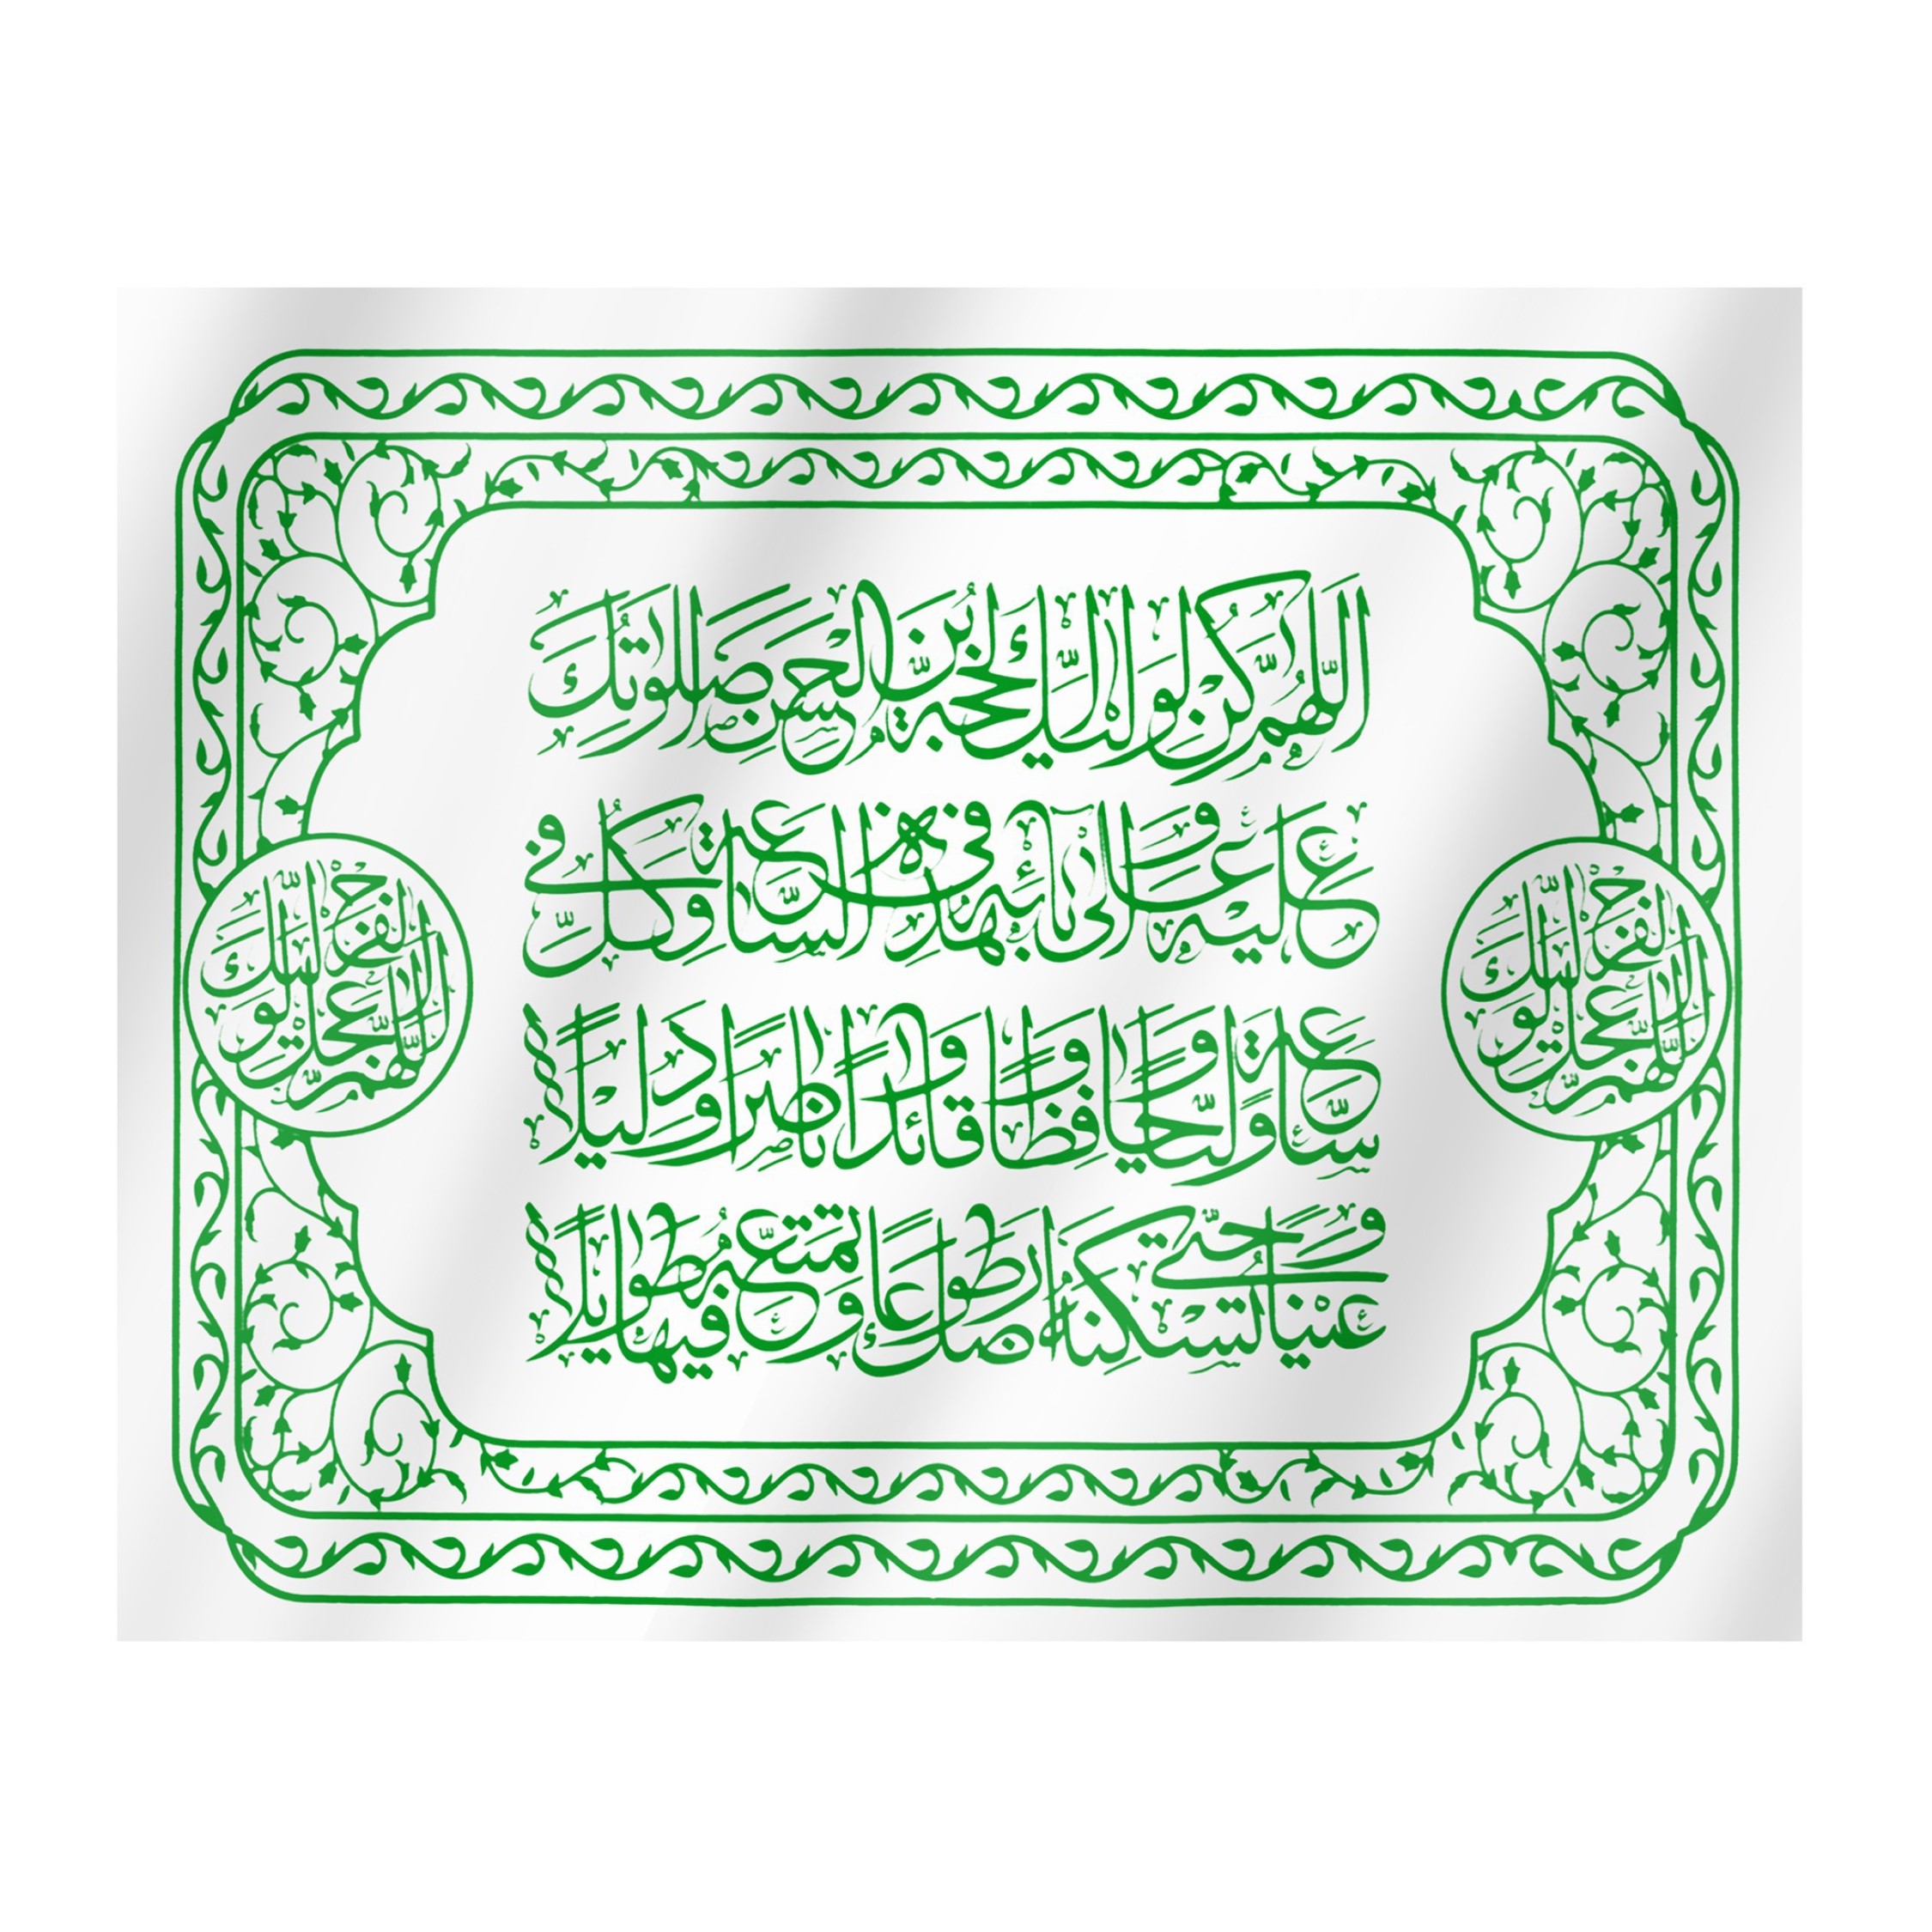 پرچم مدل مذهبی دعای سلامتی امام عصر کد 20001415